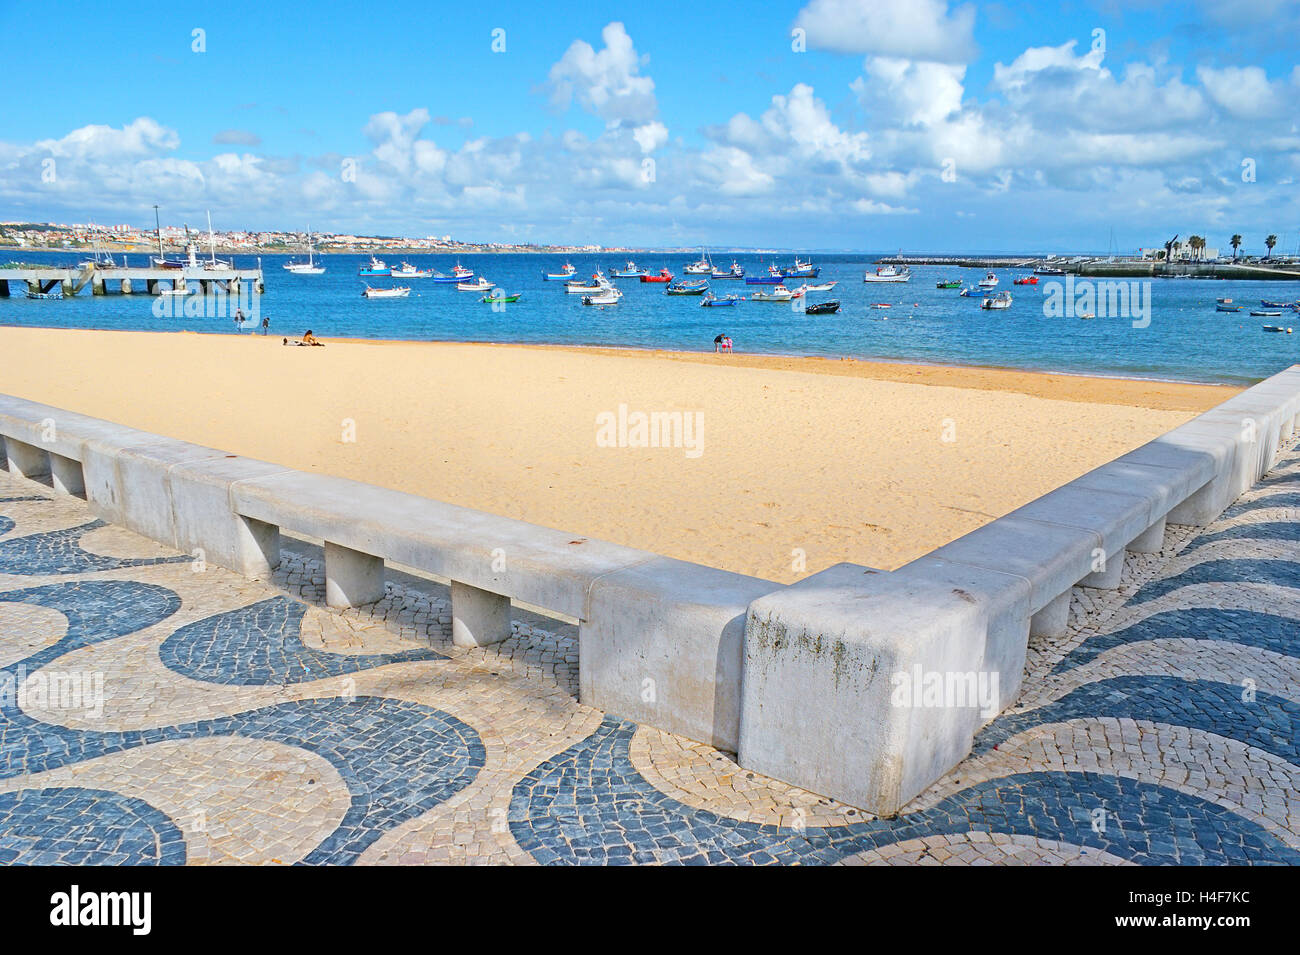 La promenade le long de la plage de Ribeira couverts avec le pavé traditionnel portugais, en imitant le modèle des vagues Banque D'Images